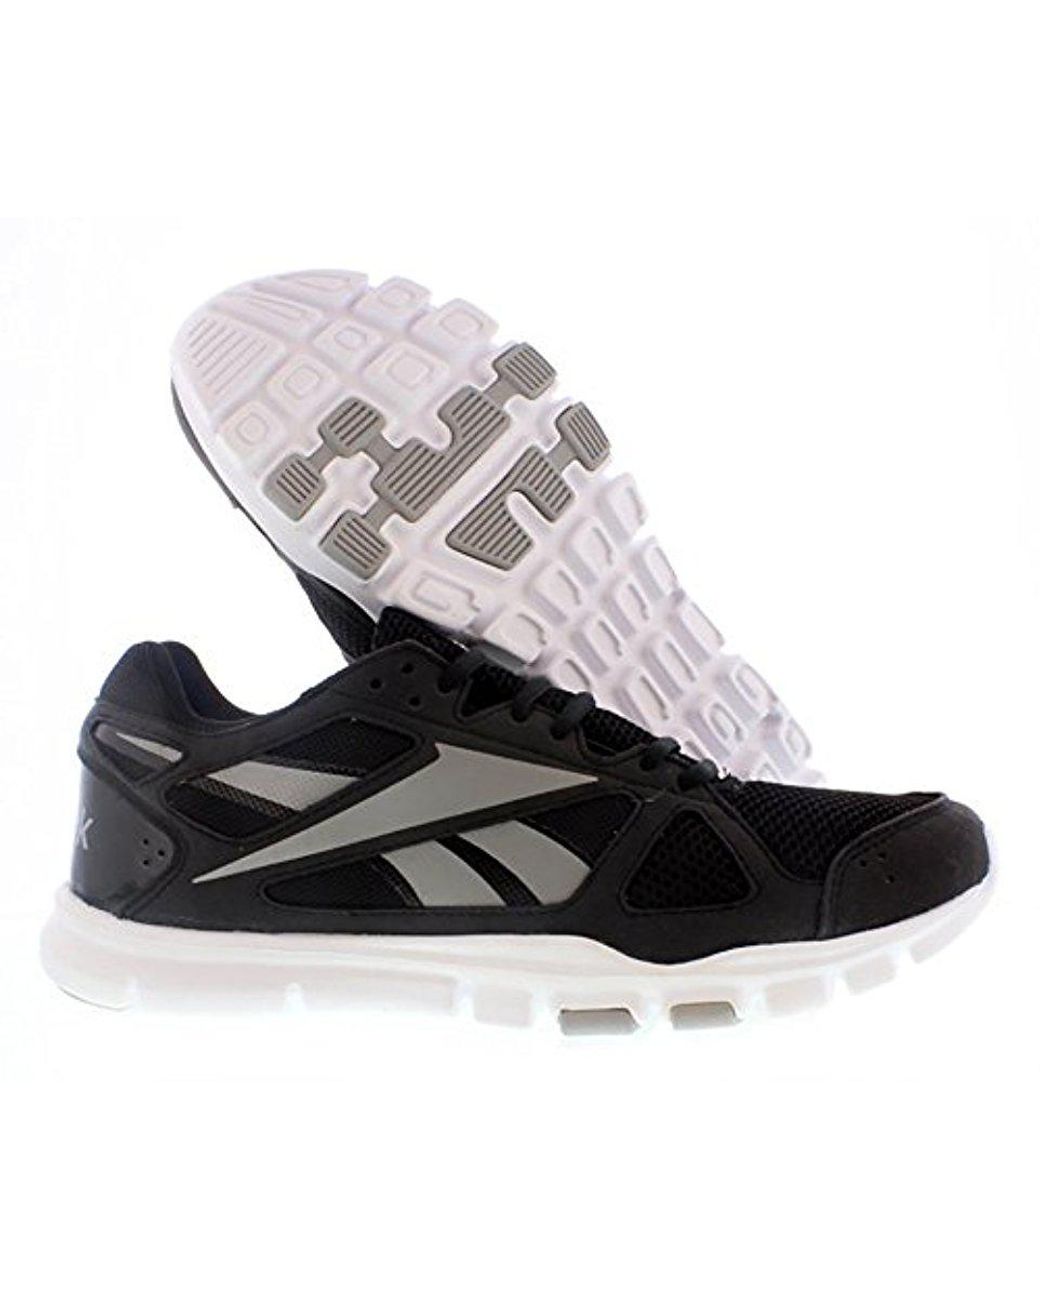 reebok men's yourflex cross-training shoe